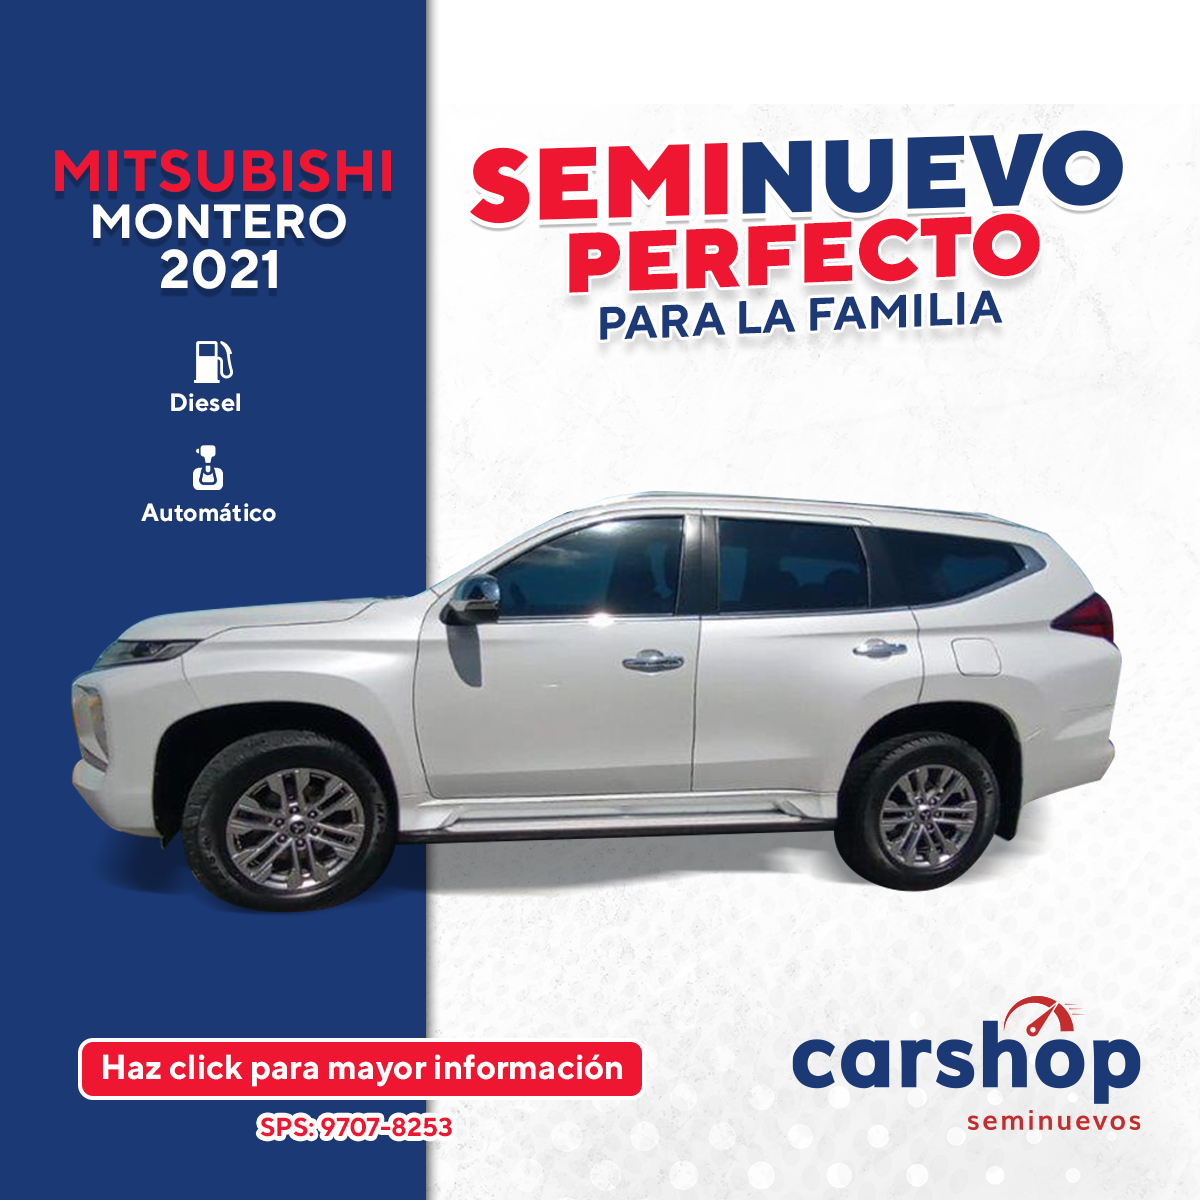 Mitsubishi Montero 2021